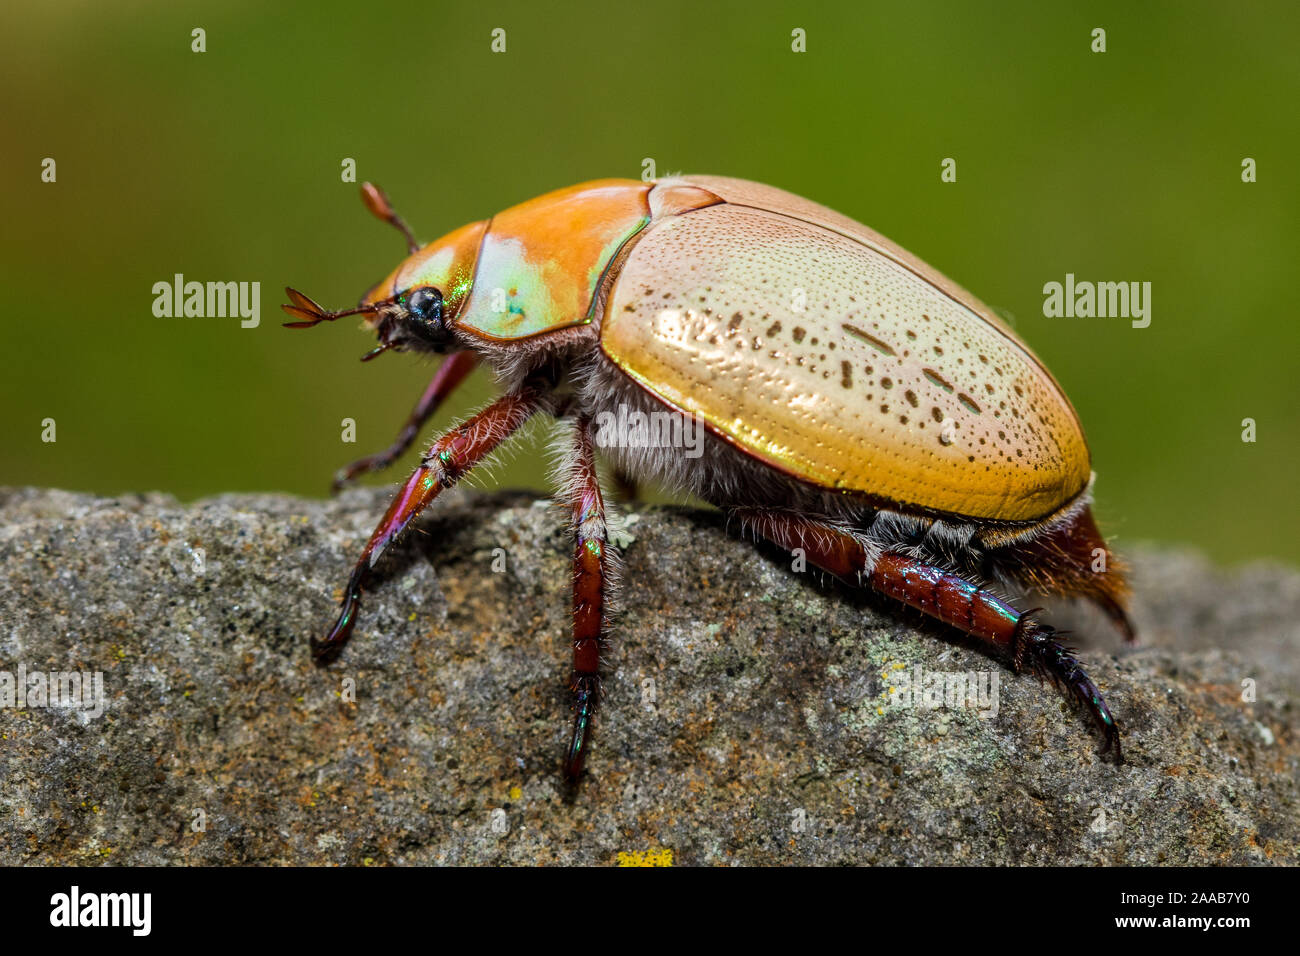 Australian Christmas Beetle Stock Photo